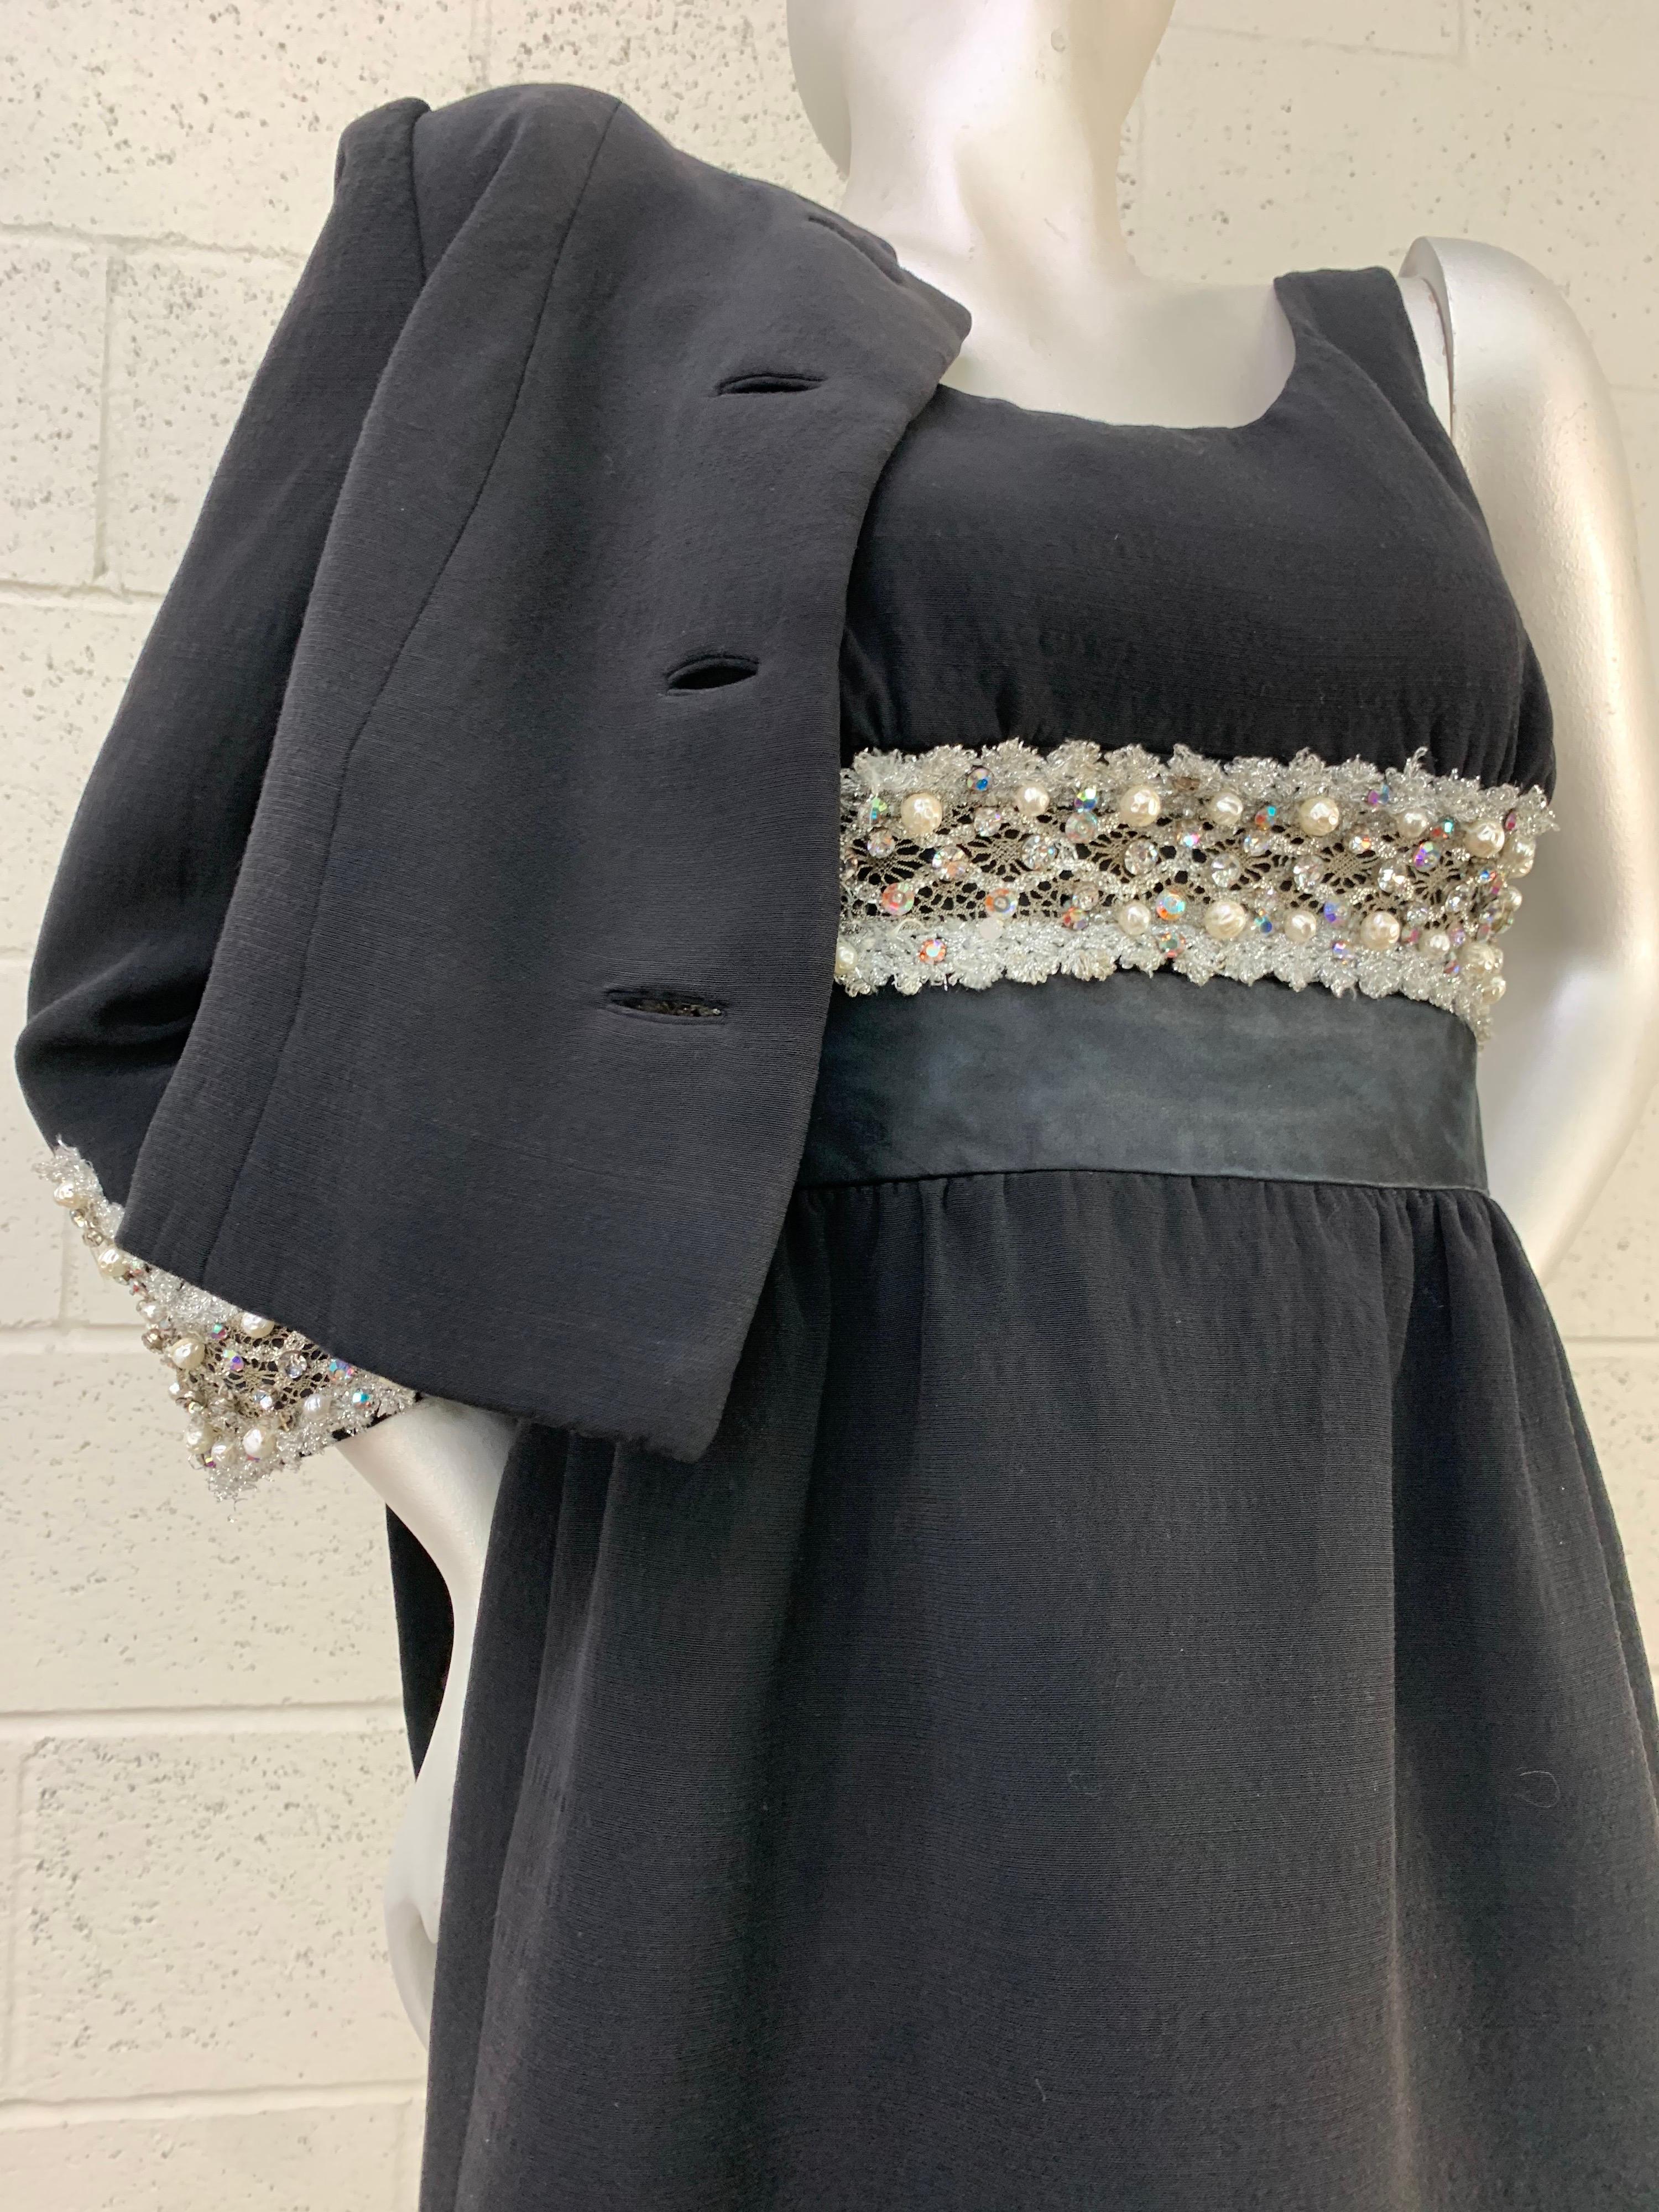 1960 Sophie-Saks Fifth Avenue Mod Babydoll Dress and Bolero Jacket in Black Wool & Jeweled Lace Trim : Une charmante robe babydoll à taille empire avec une mini-jupe complète garnie de dentelle métallique argentée, de strass et de fausses perles.